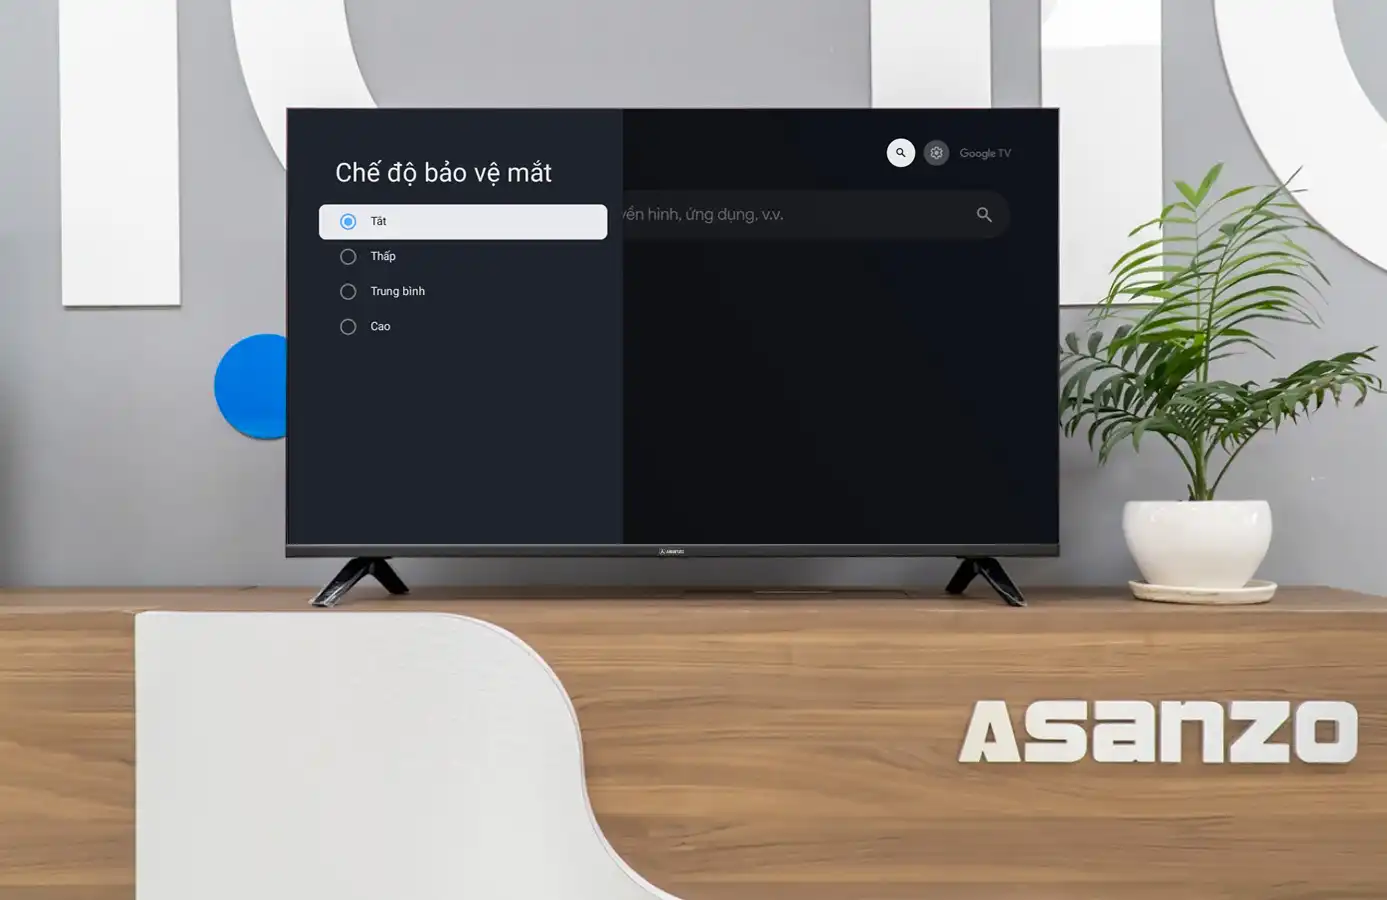 ASANZO ra mắt model Google TV 32 inch và 43 inch với giá chỉ từ 4.7 triệu đồng